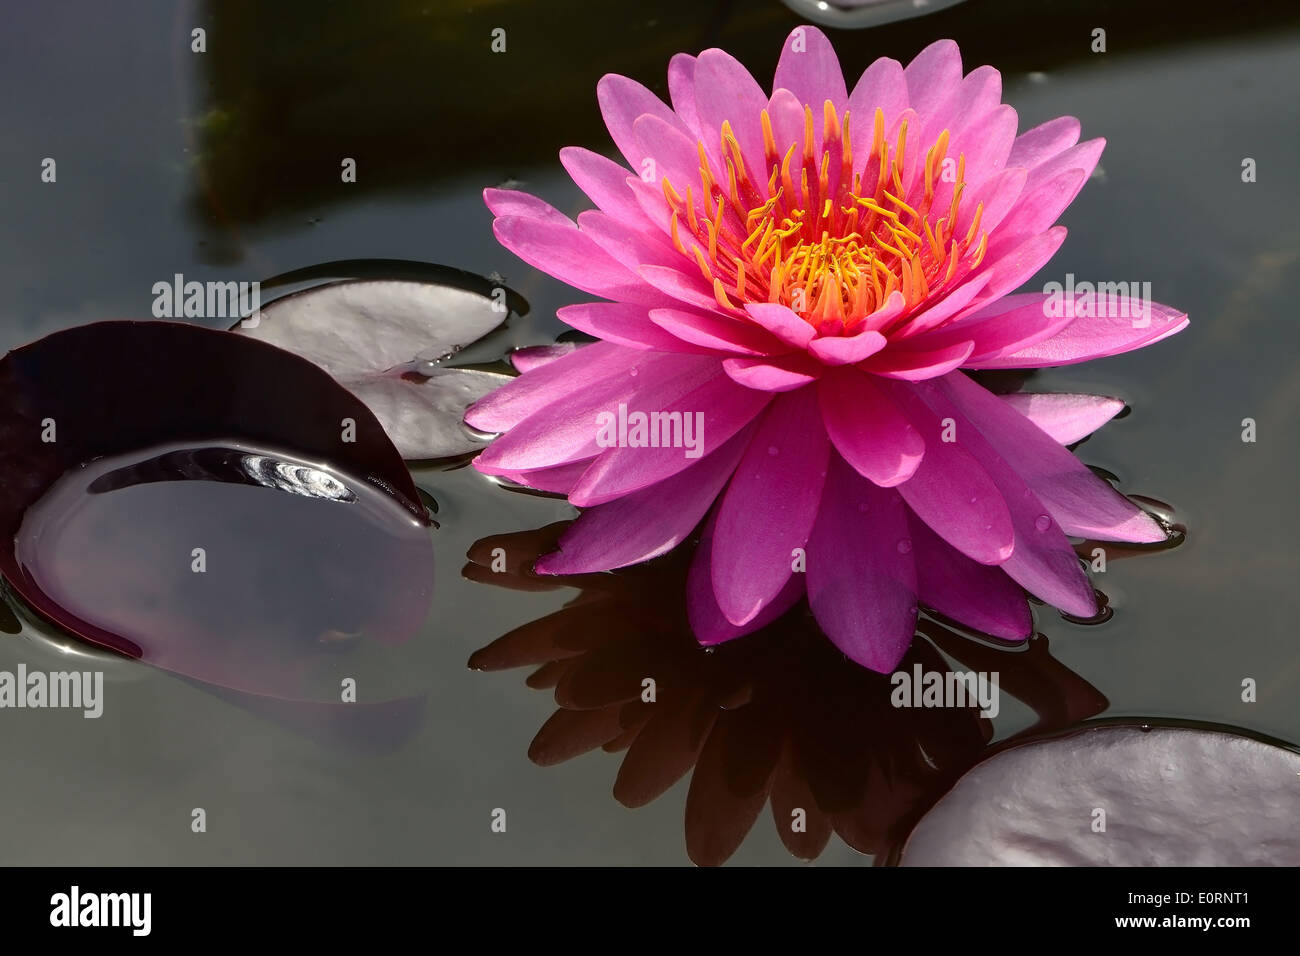 Beautiful of pink waterlily Stock Photo